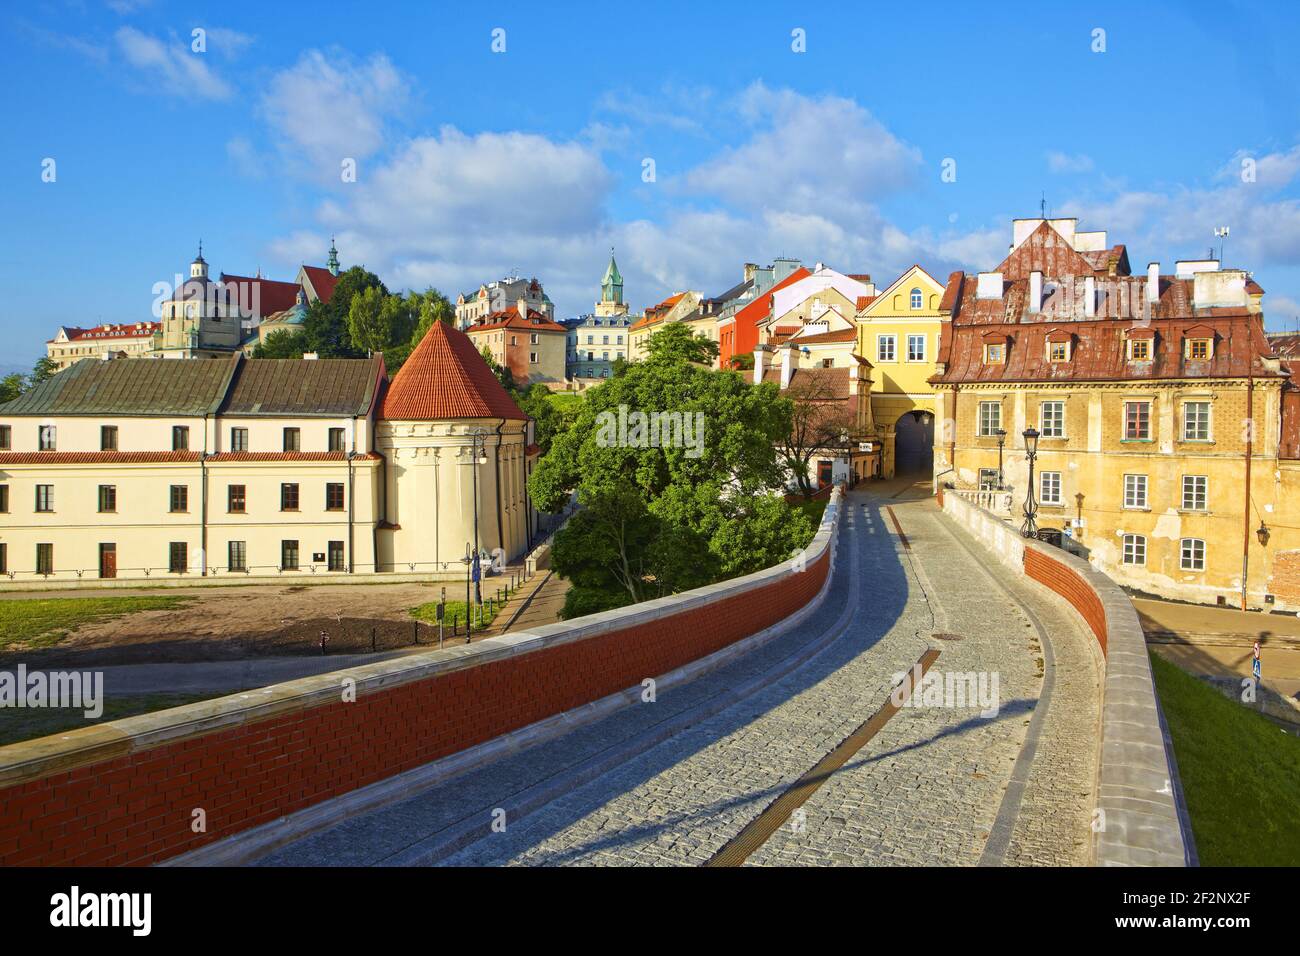 Poland, Lublin, Old Town, Lublin voivodeship. Stock Photo